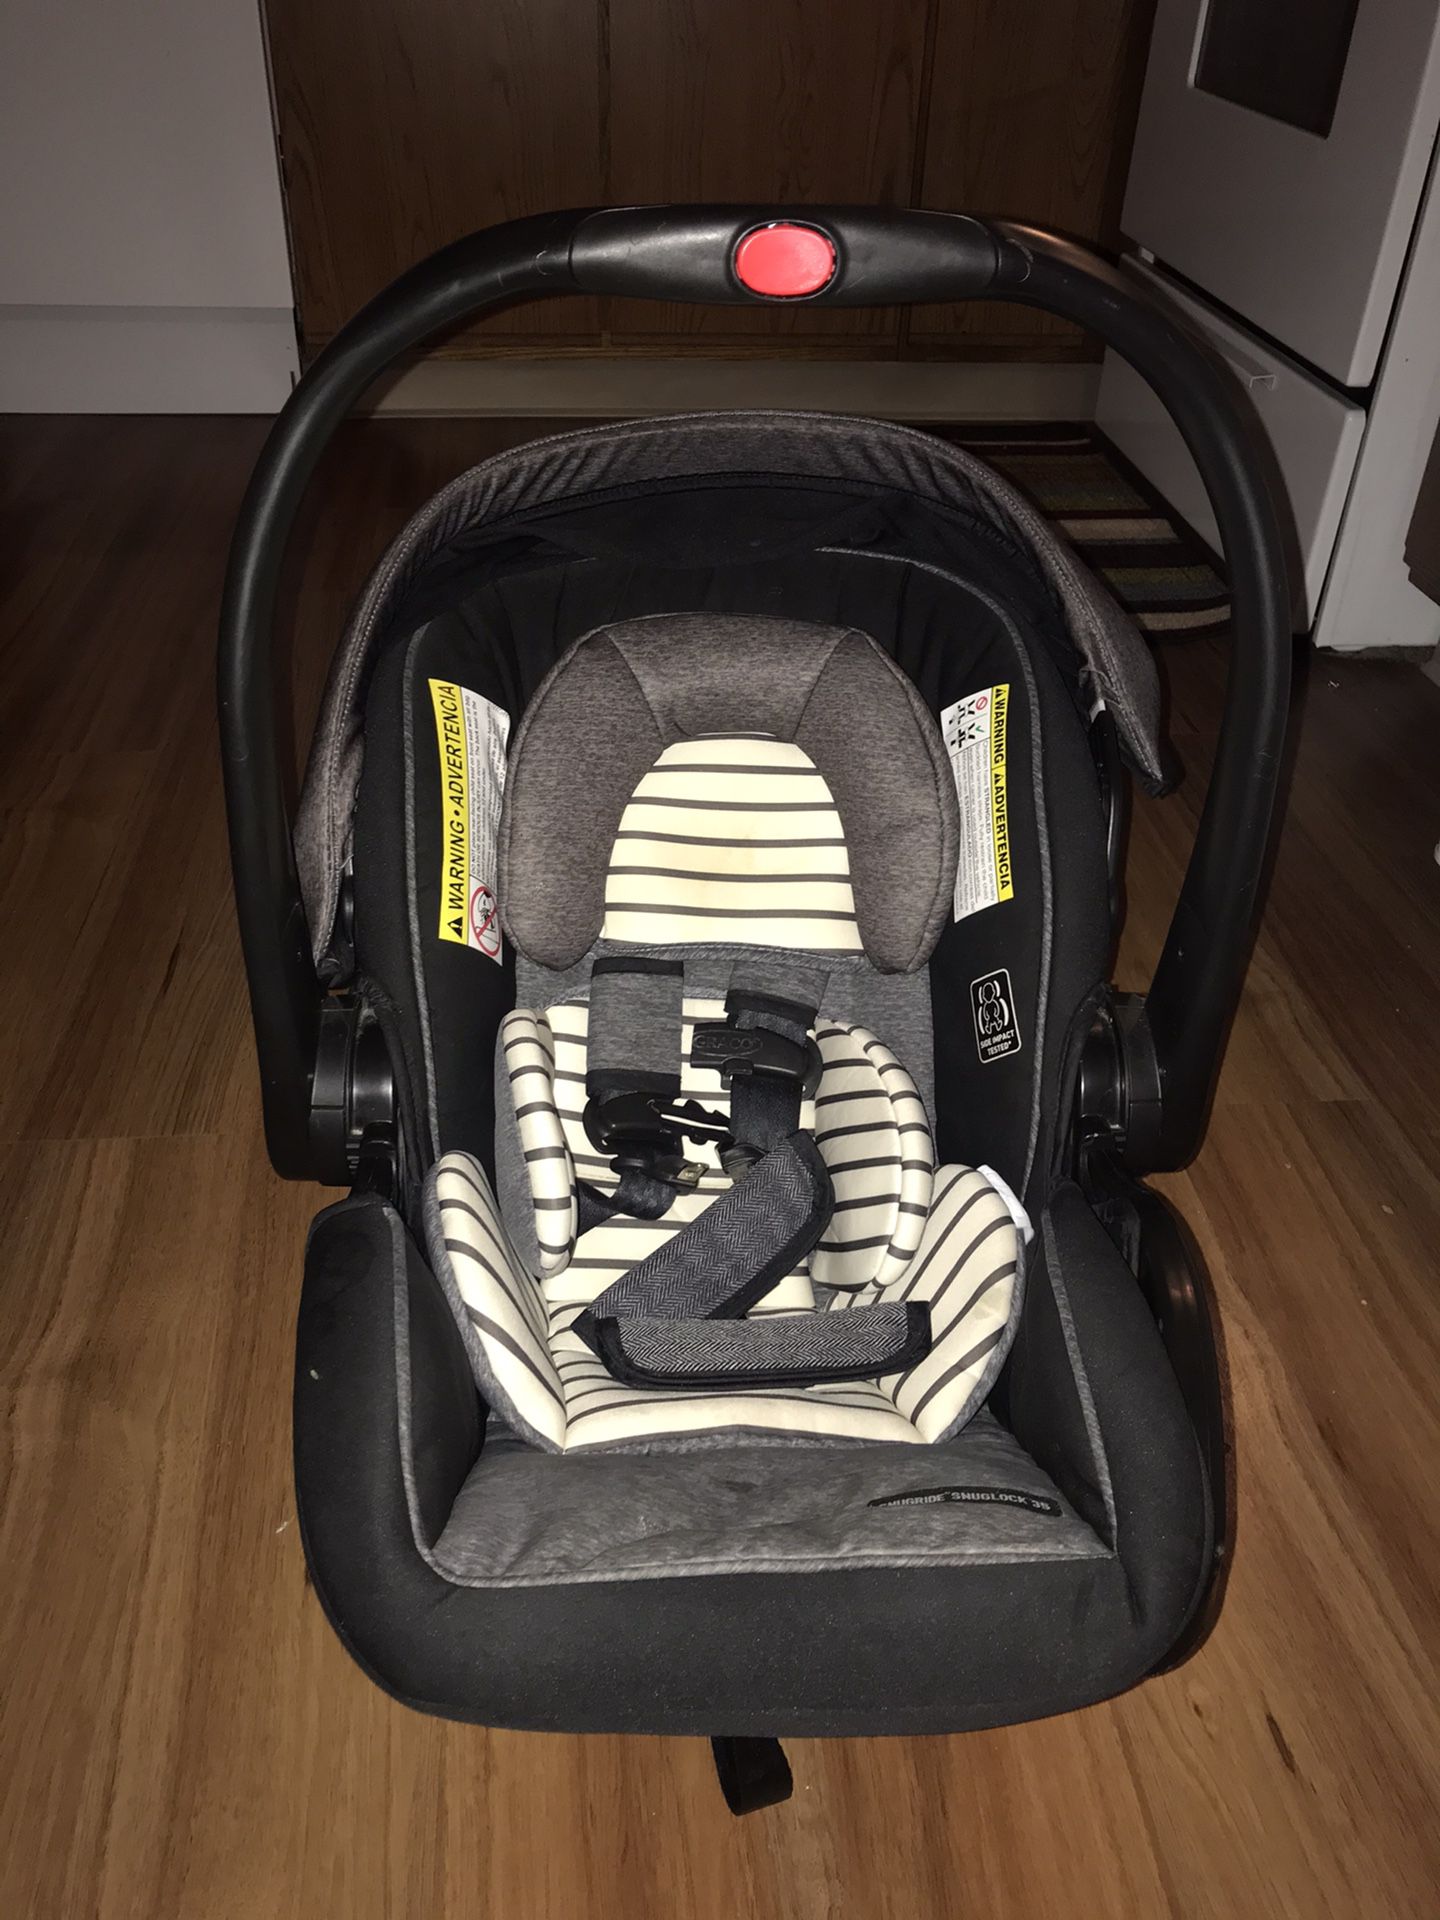 Graco Snugride Infant Car Seat